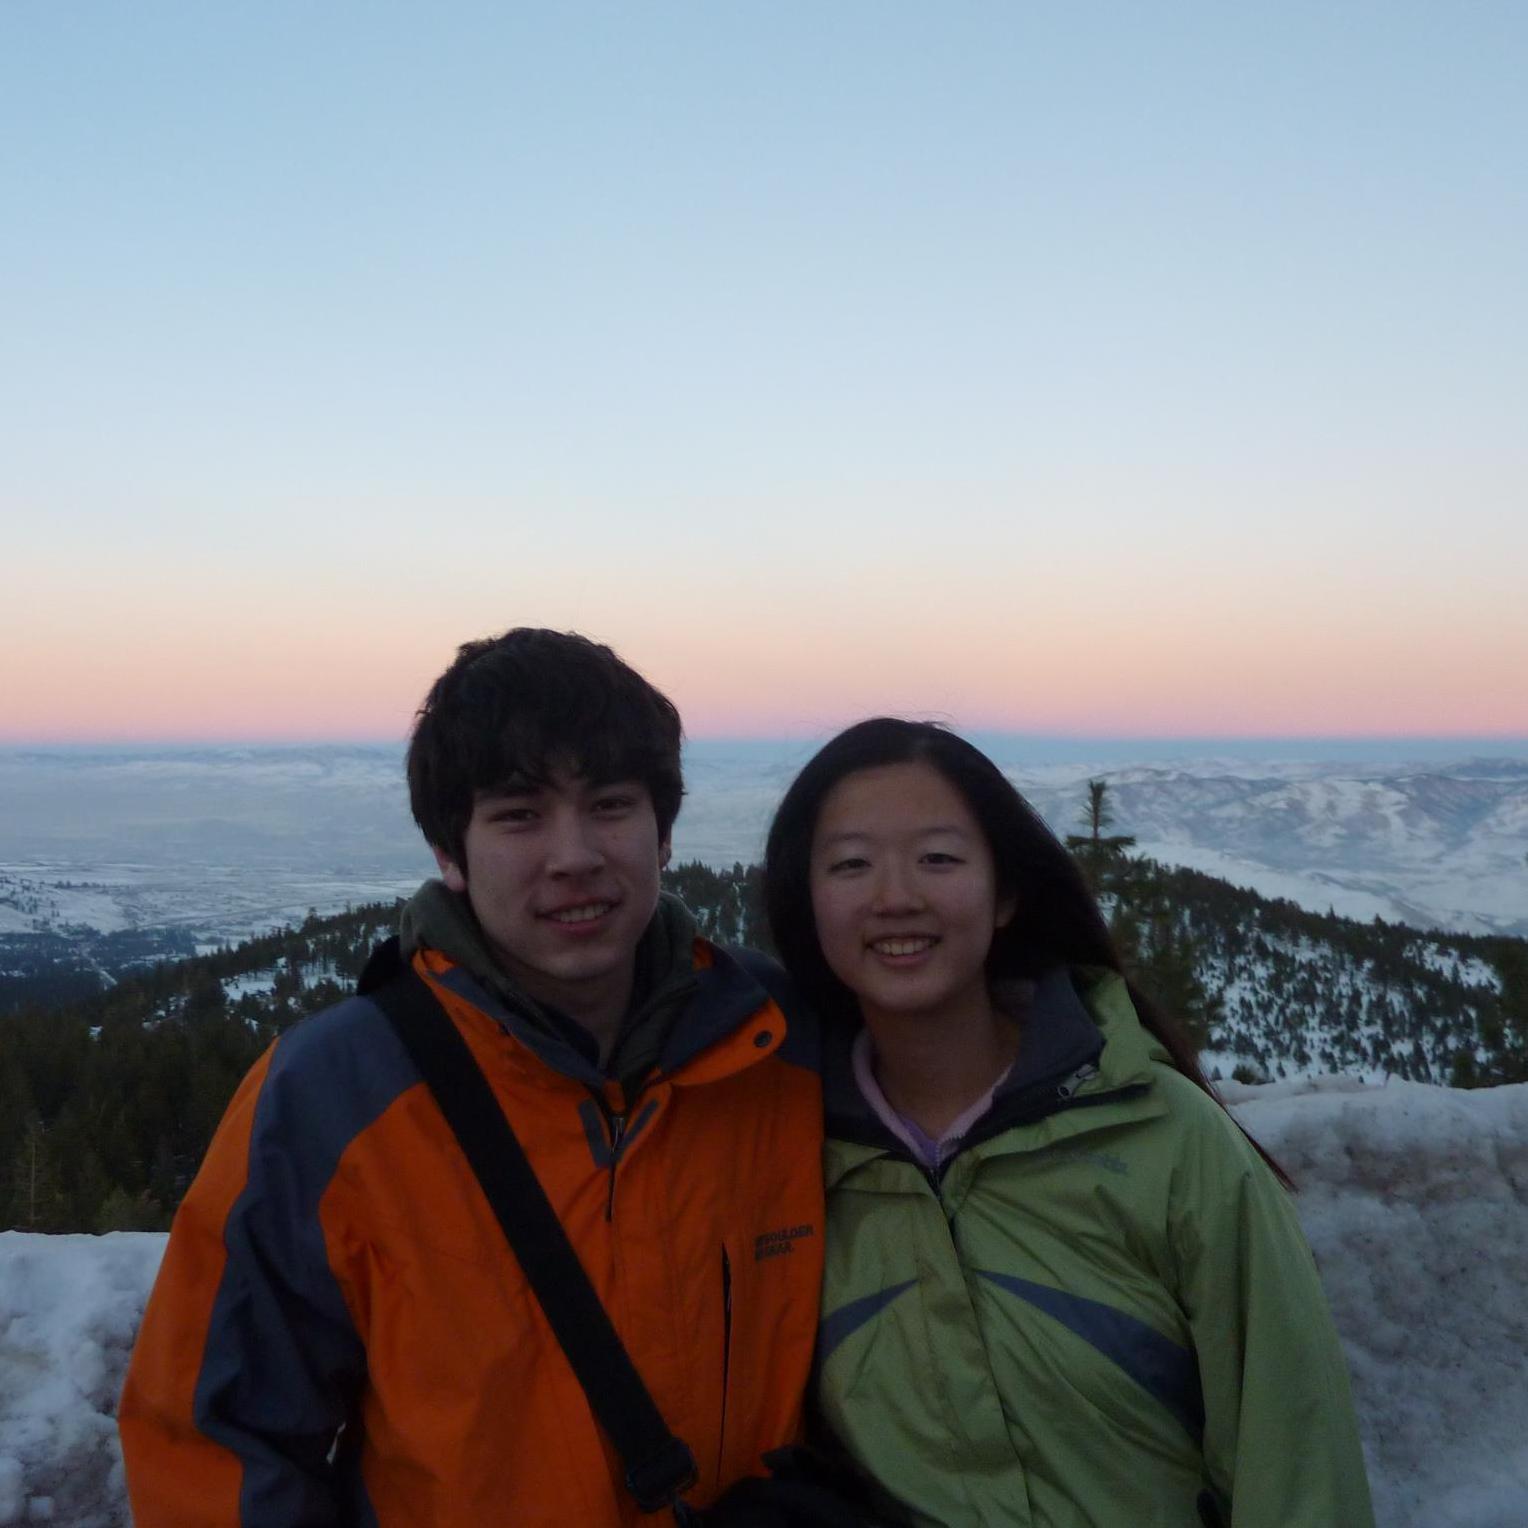 First ski trip together, Lake Tahoe (Jan 2013)